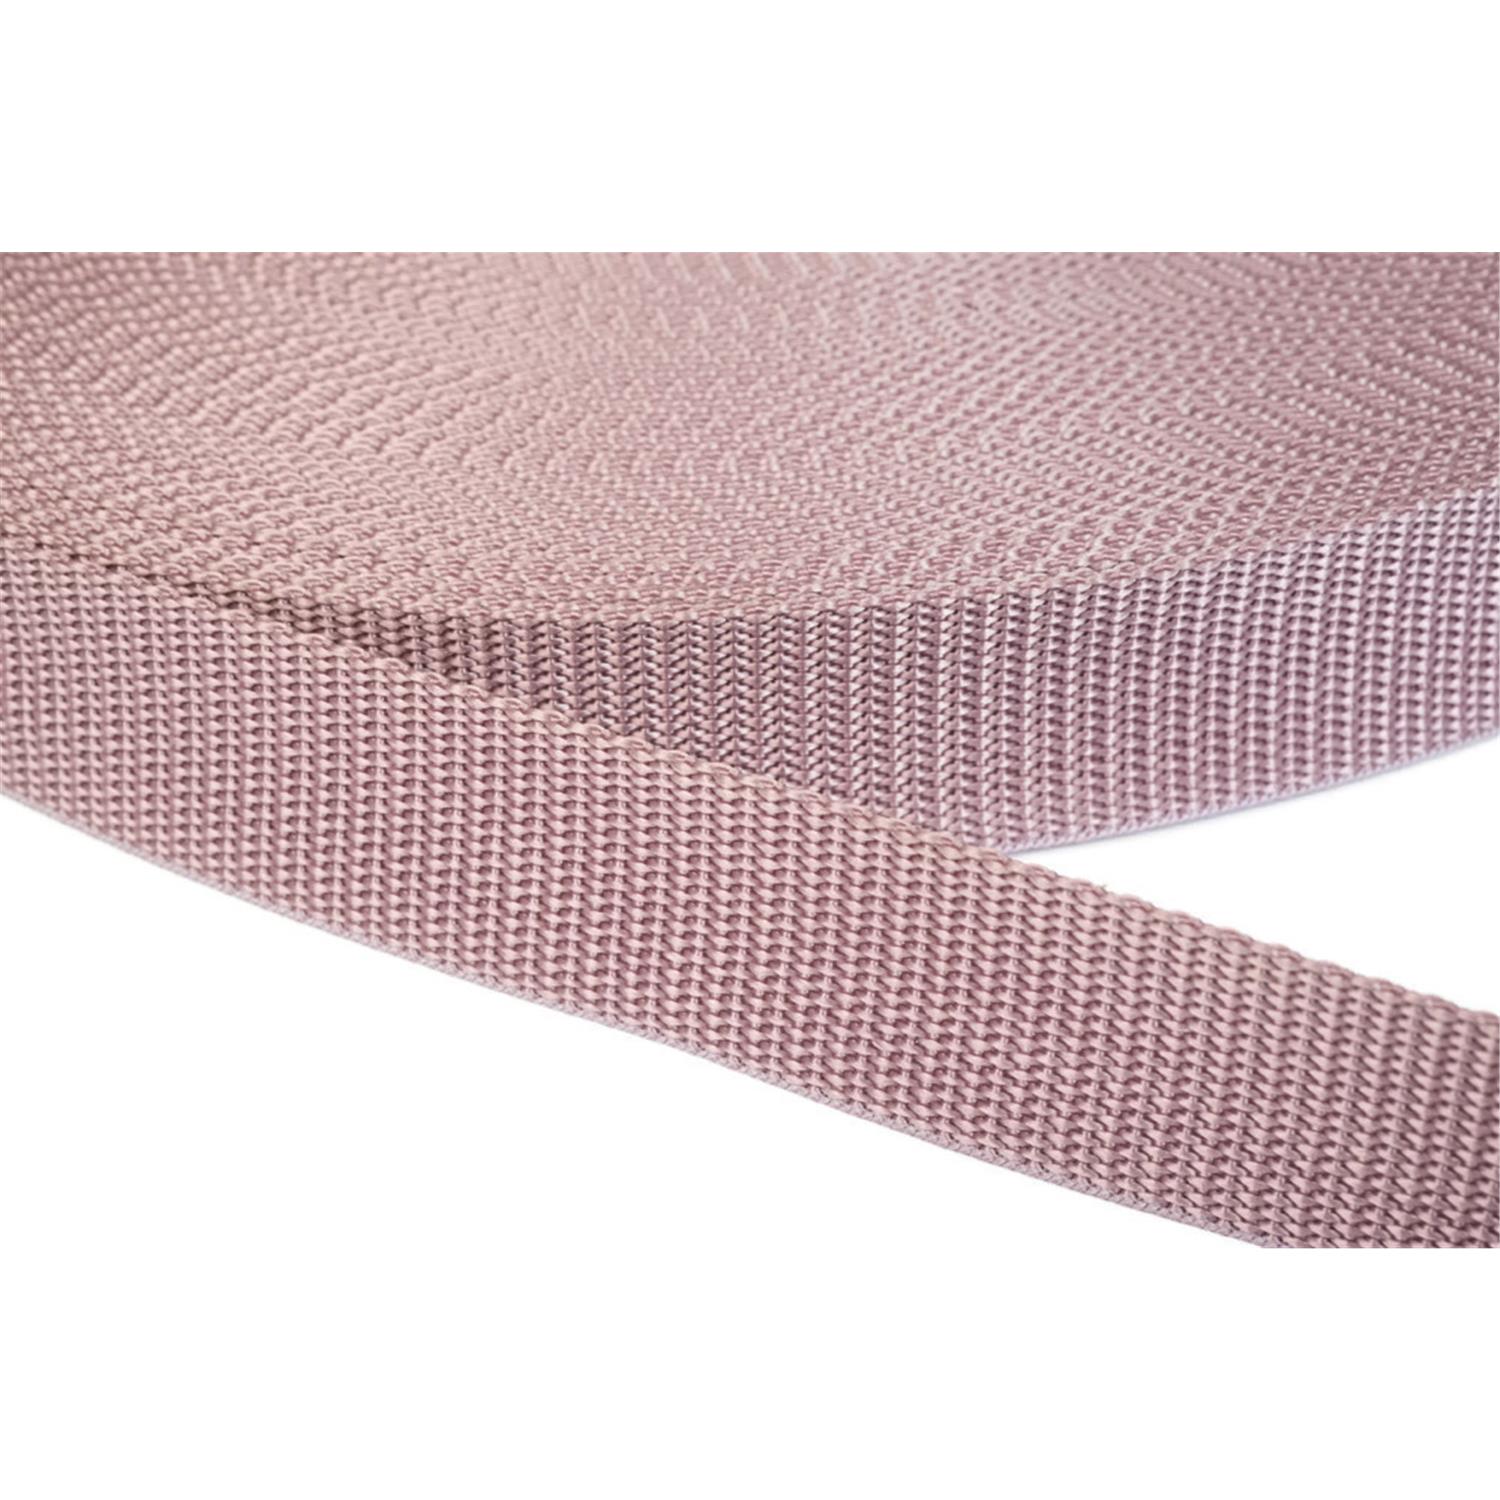 Gurtband 50mm breit aus Polypropylen in 41 Farben 15 - altrosa 6 Meter